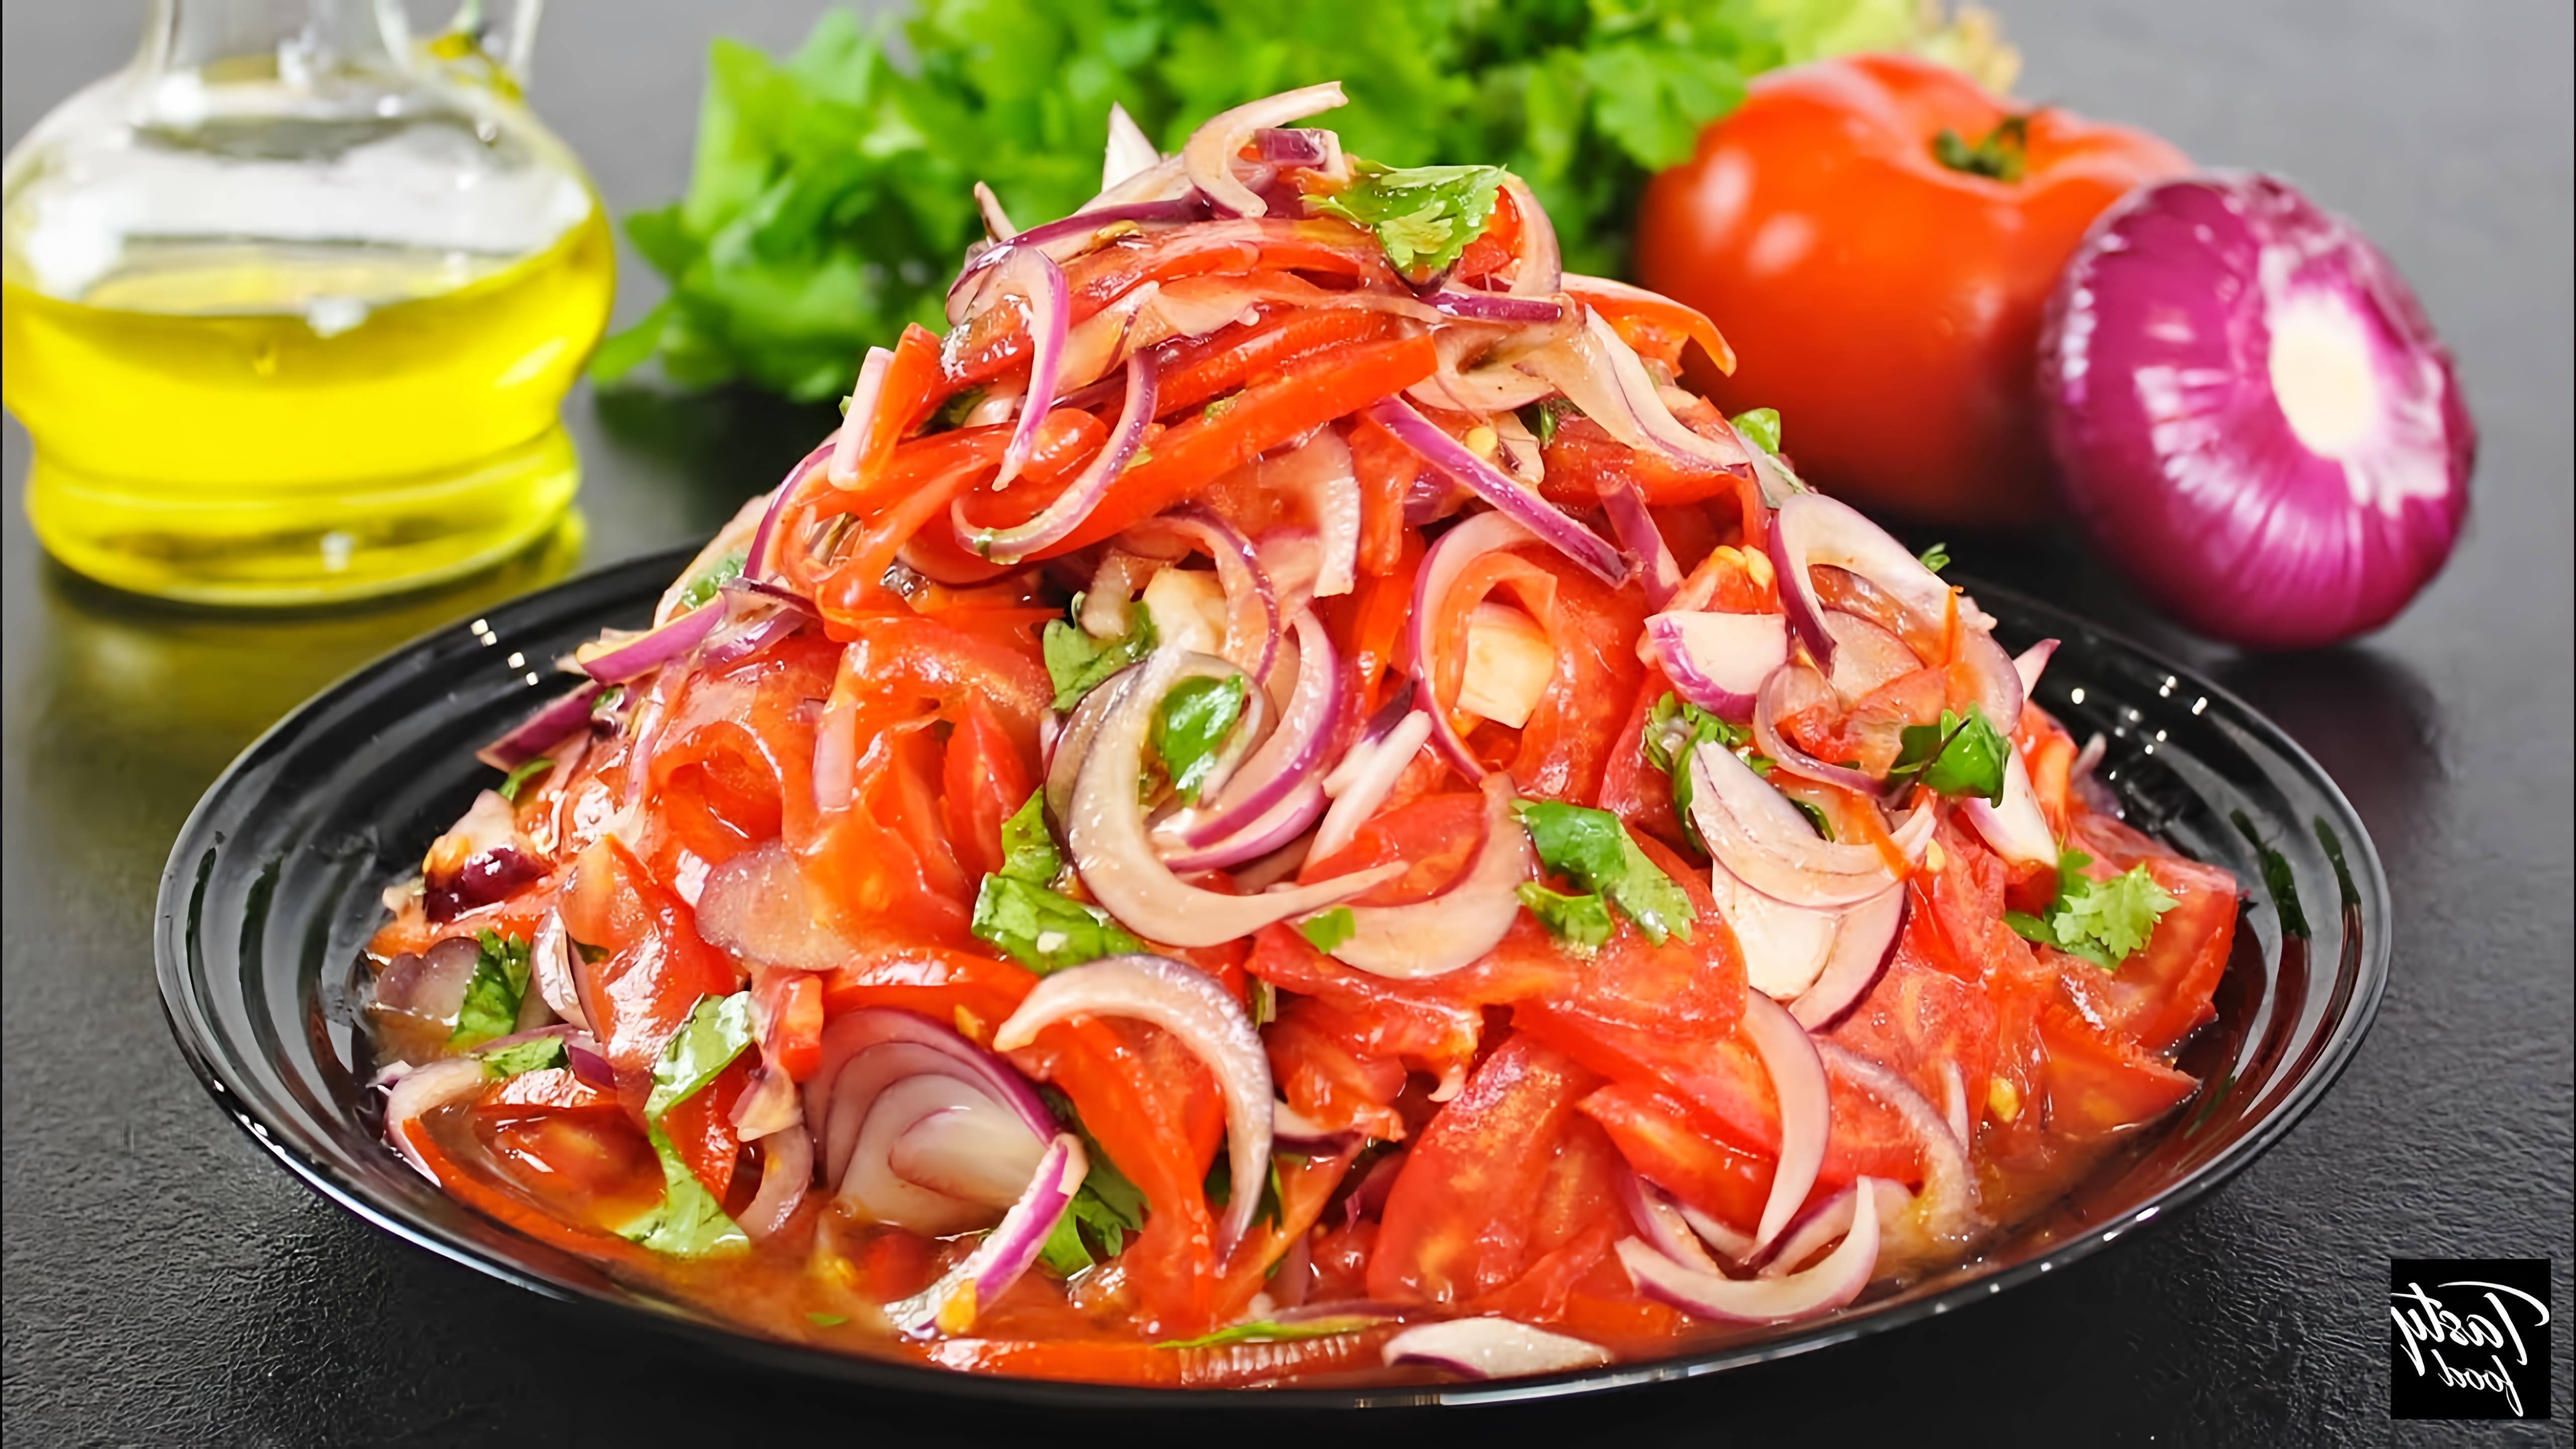 В этом видео демонстрируется процесс приготовления салата "Шакароб", который идеально подходит к мясным блюдам и плову